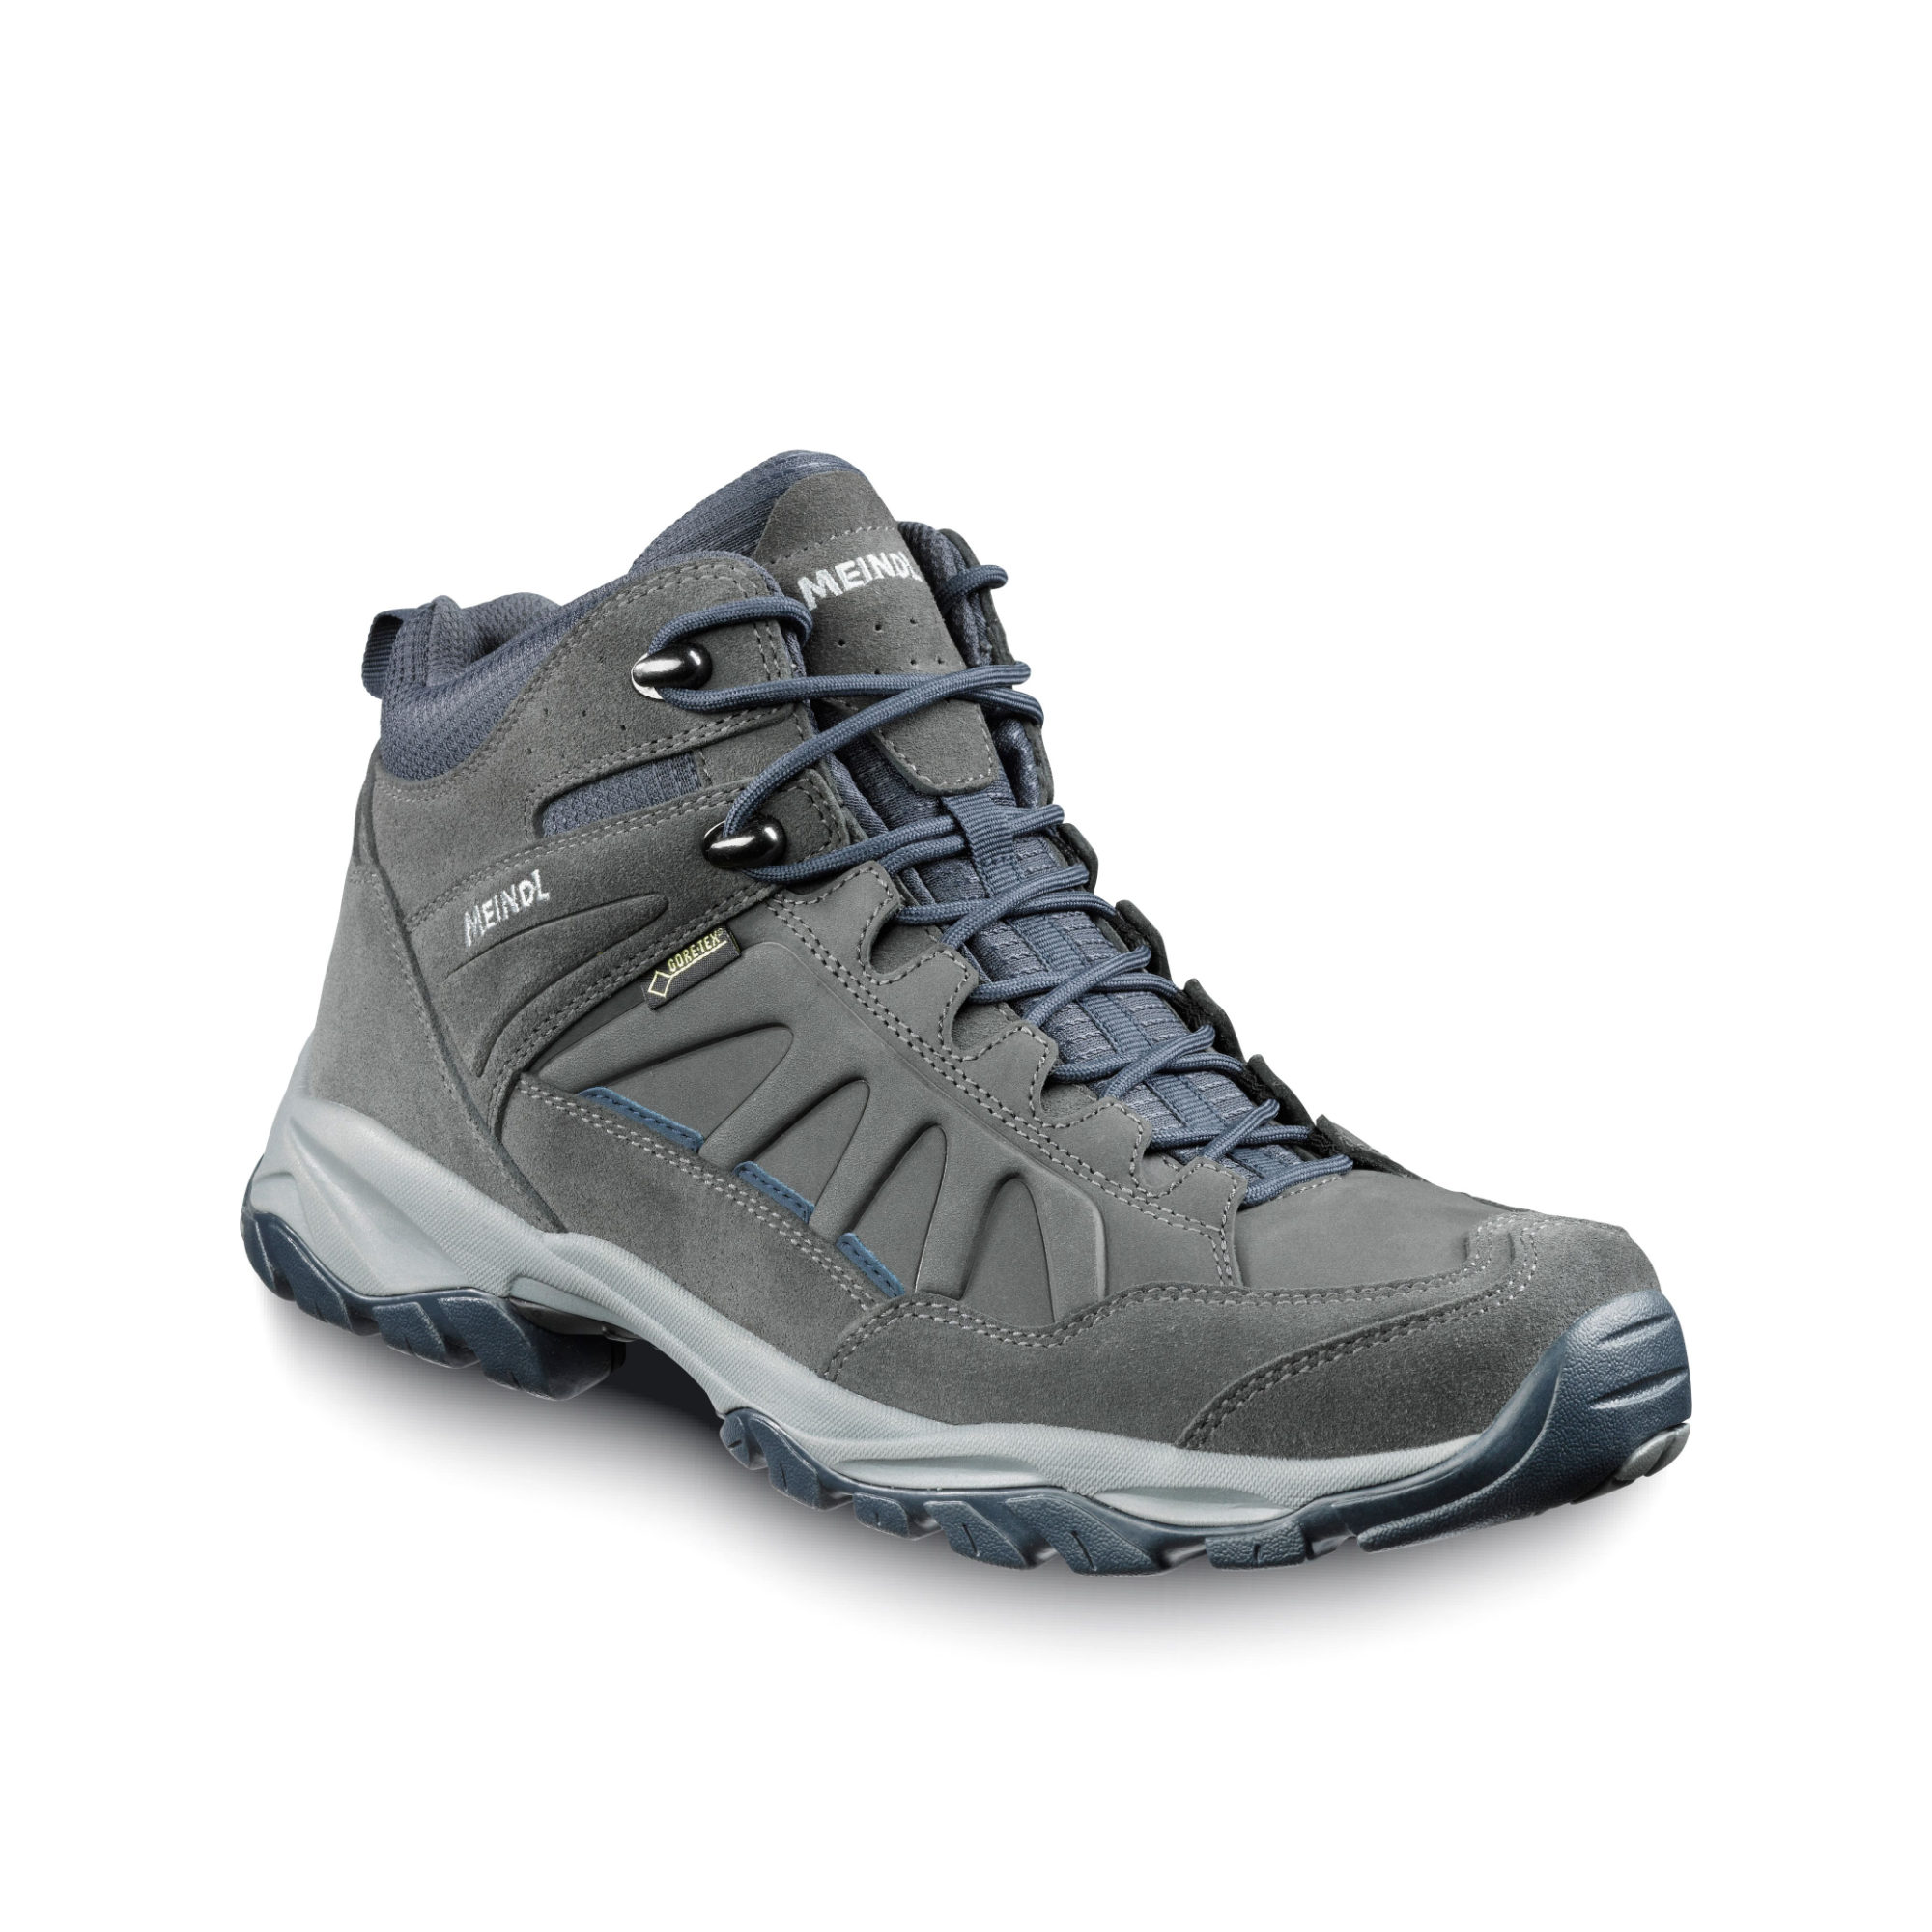 Nebraska Mid GTX Walking Shoes | Bramwell International Ltd